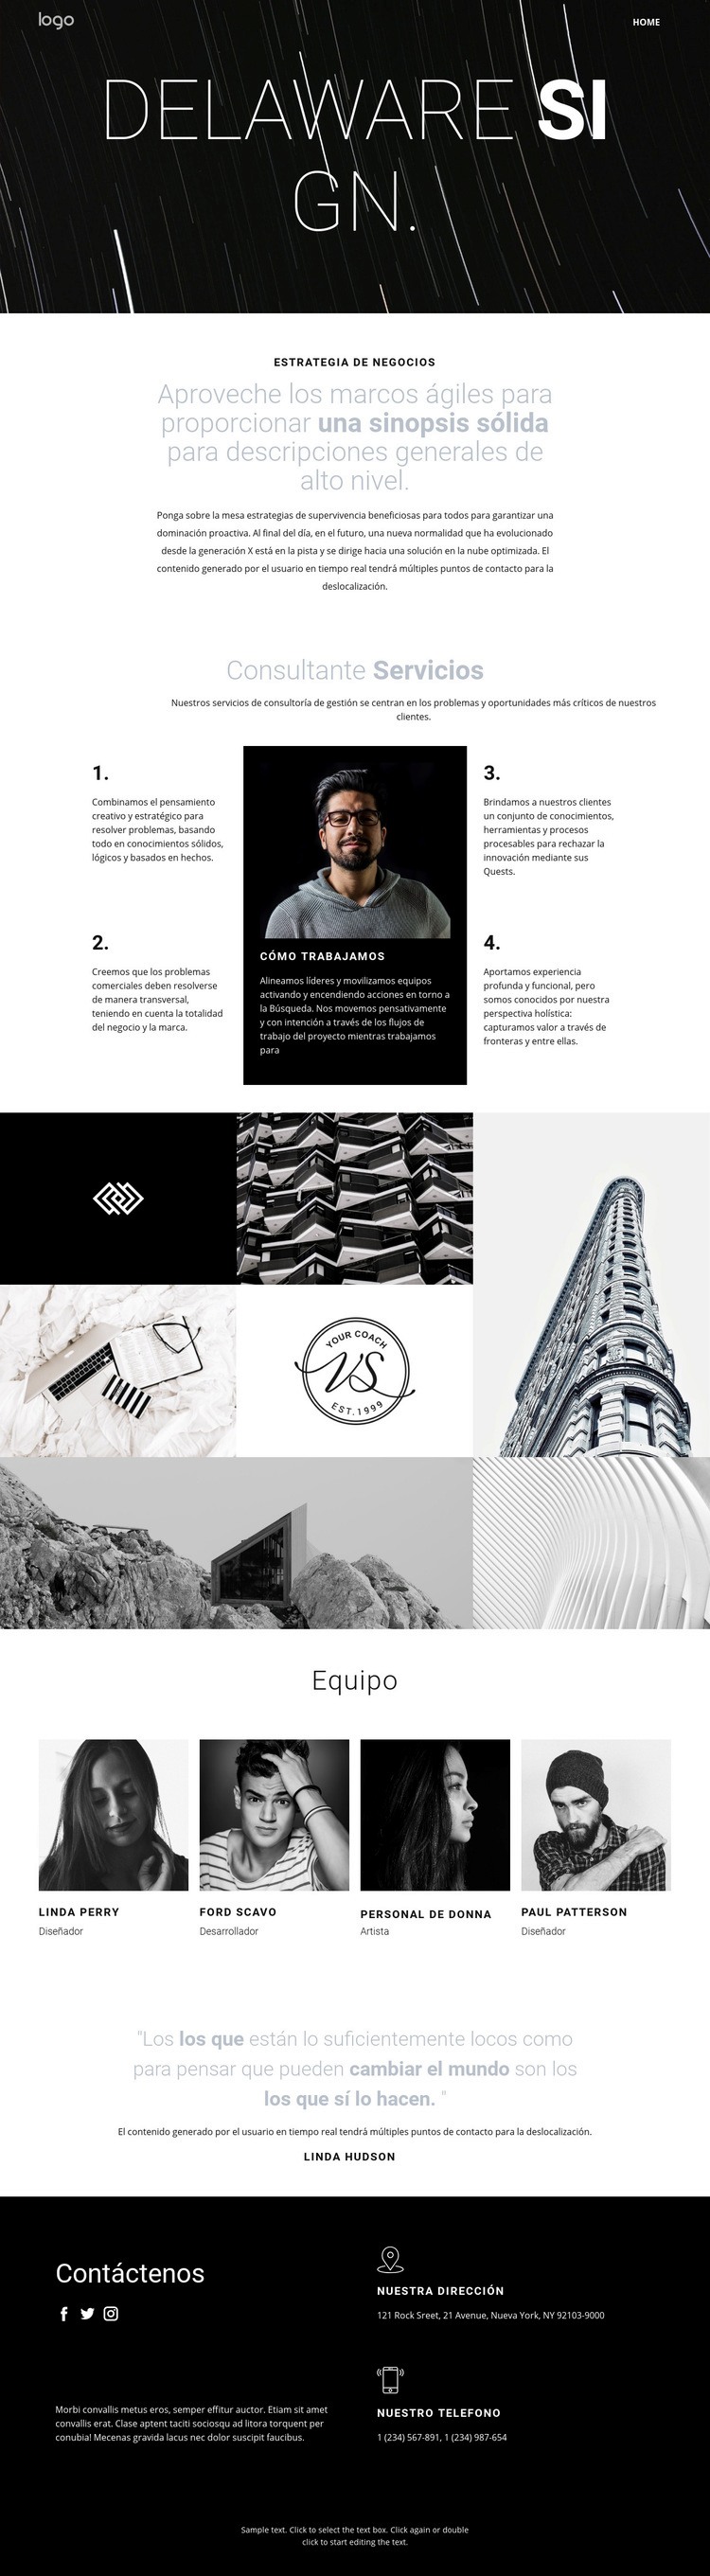 Diseño y arte creativo Diseño de páginas web